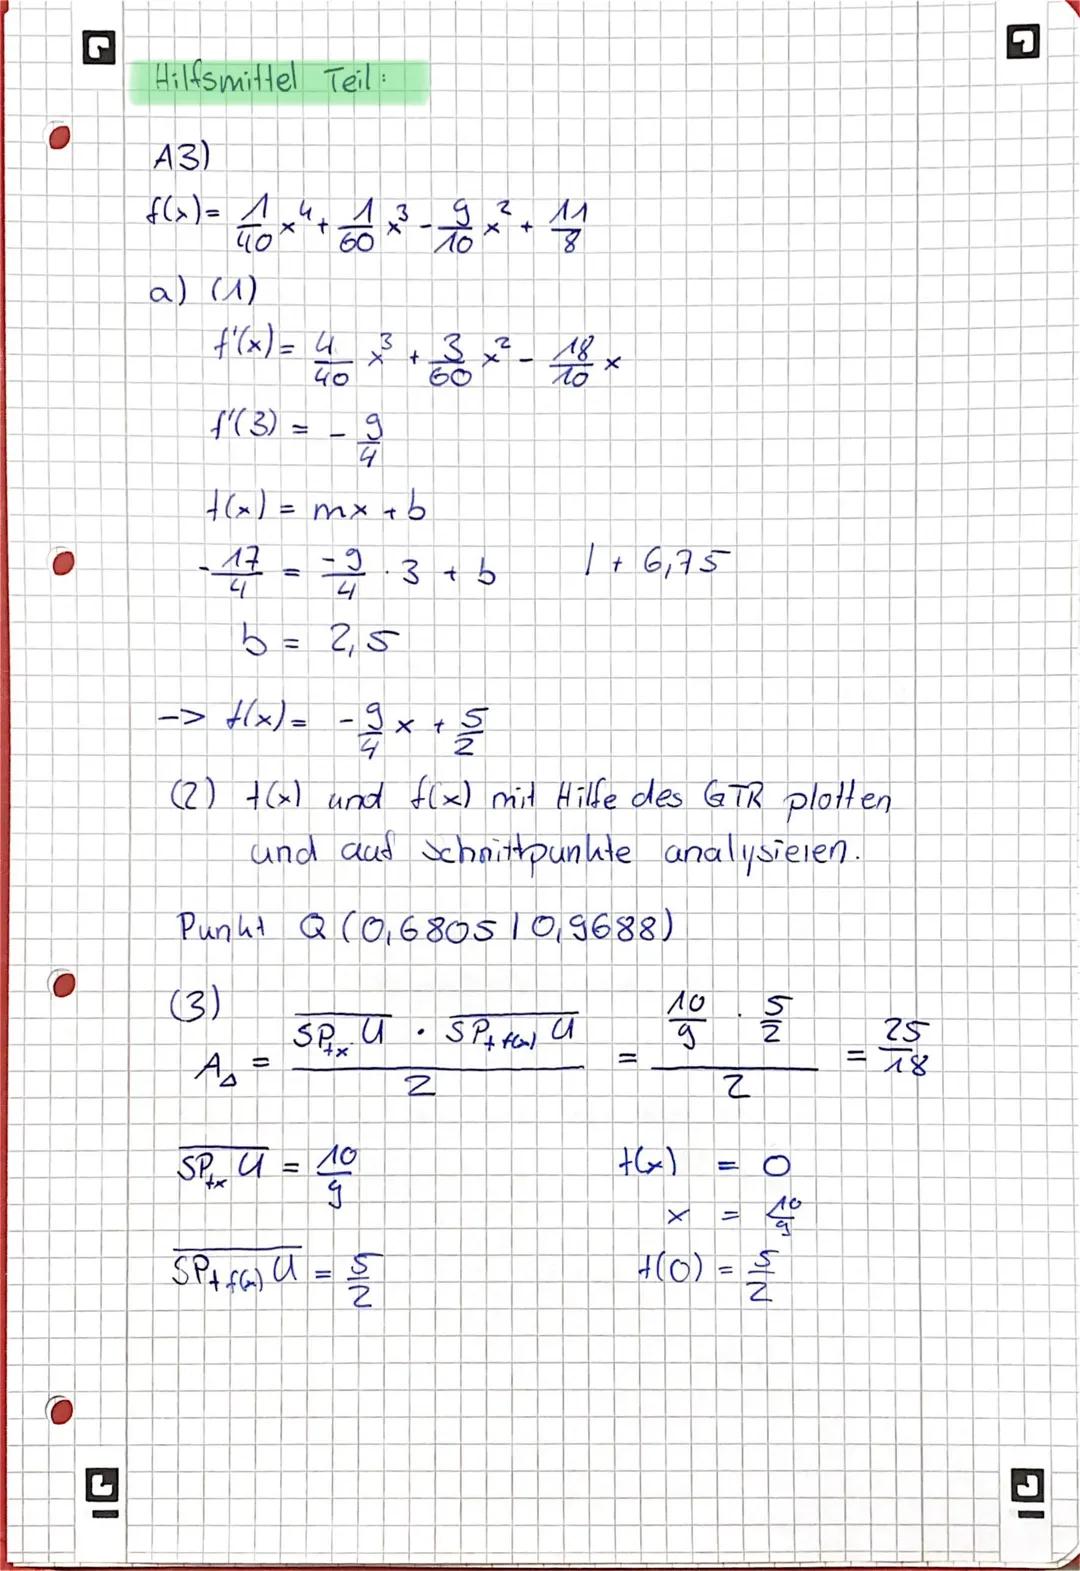 -
Hilfsmittelfreier Teil:
m =
А^)
a) Sekante durch die Punkte A (-110) und 8(216)
42)
tentrale Ulausue 2021
b) f(x)= x³
J.
3
36
4
6-0
2-(-1)